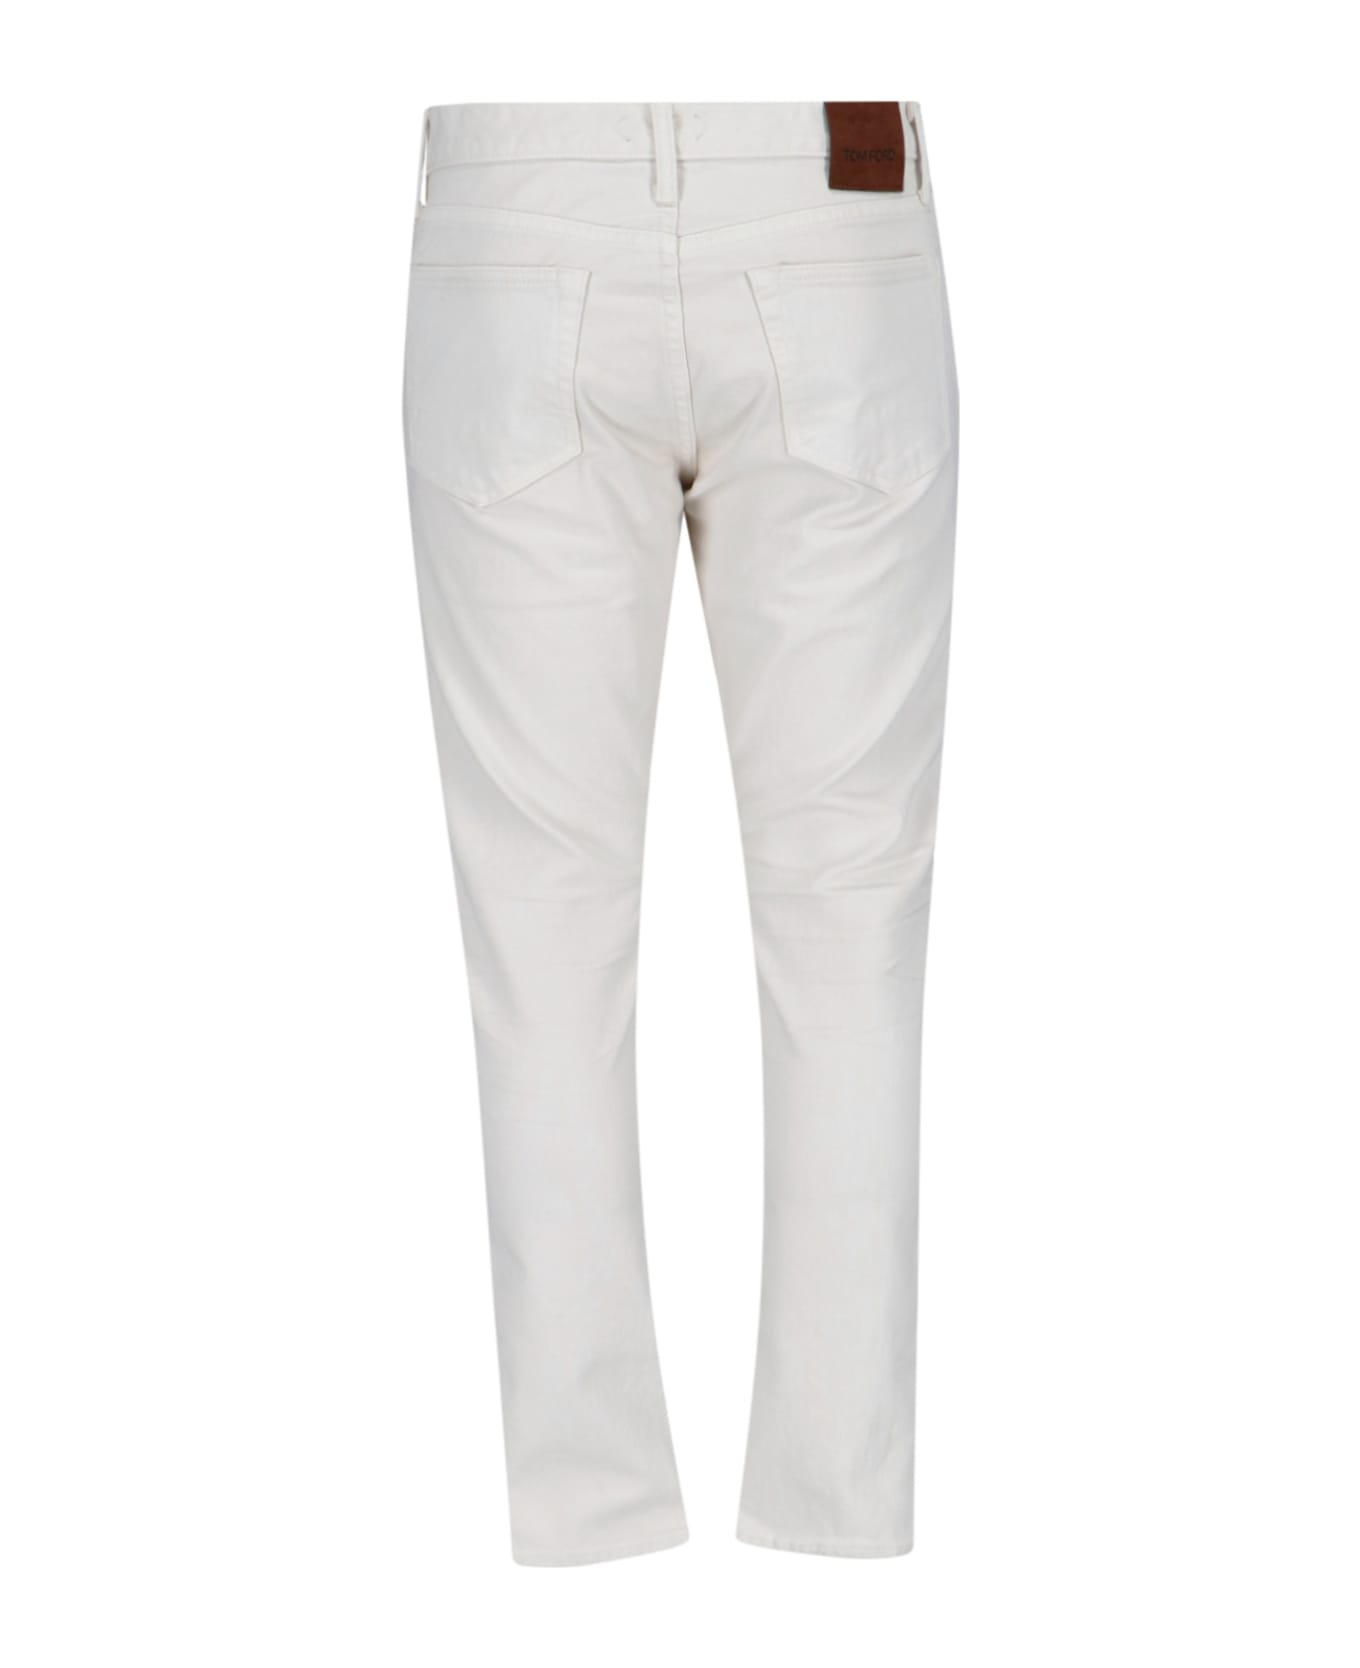 Tom Ford Slim Jeans - White